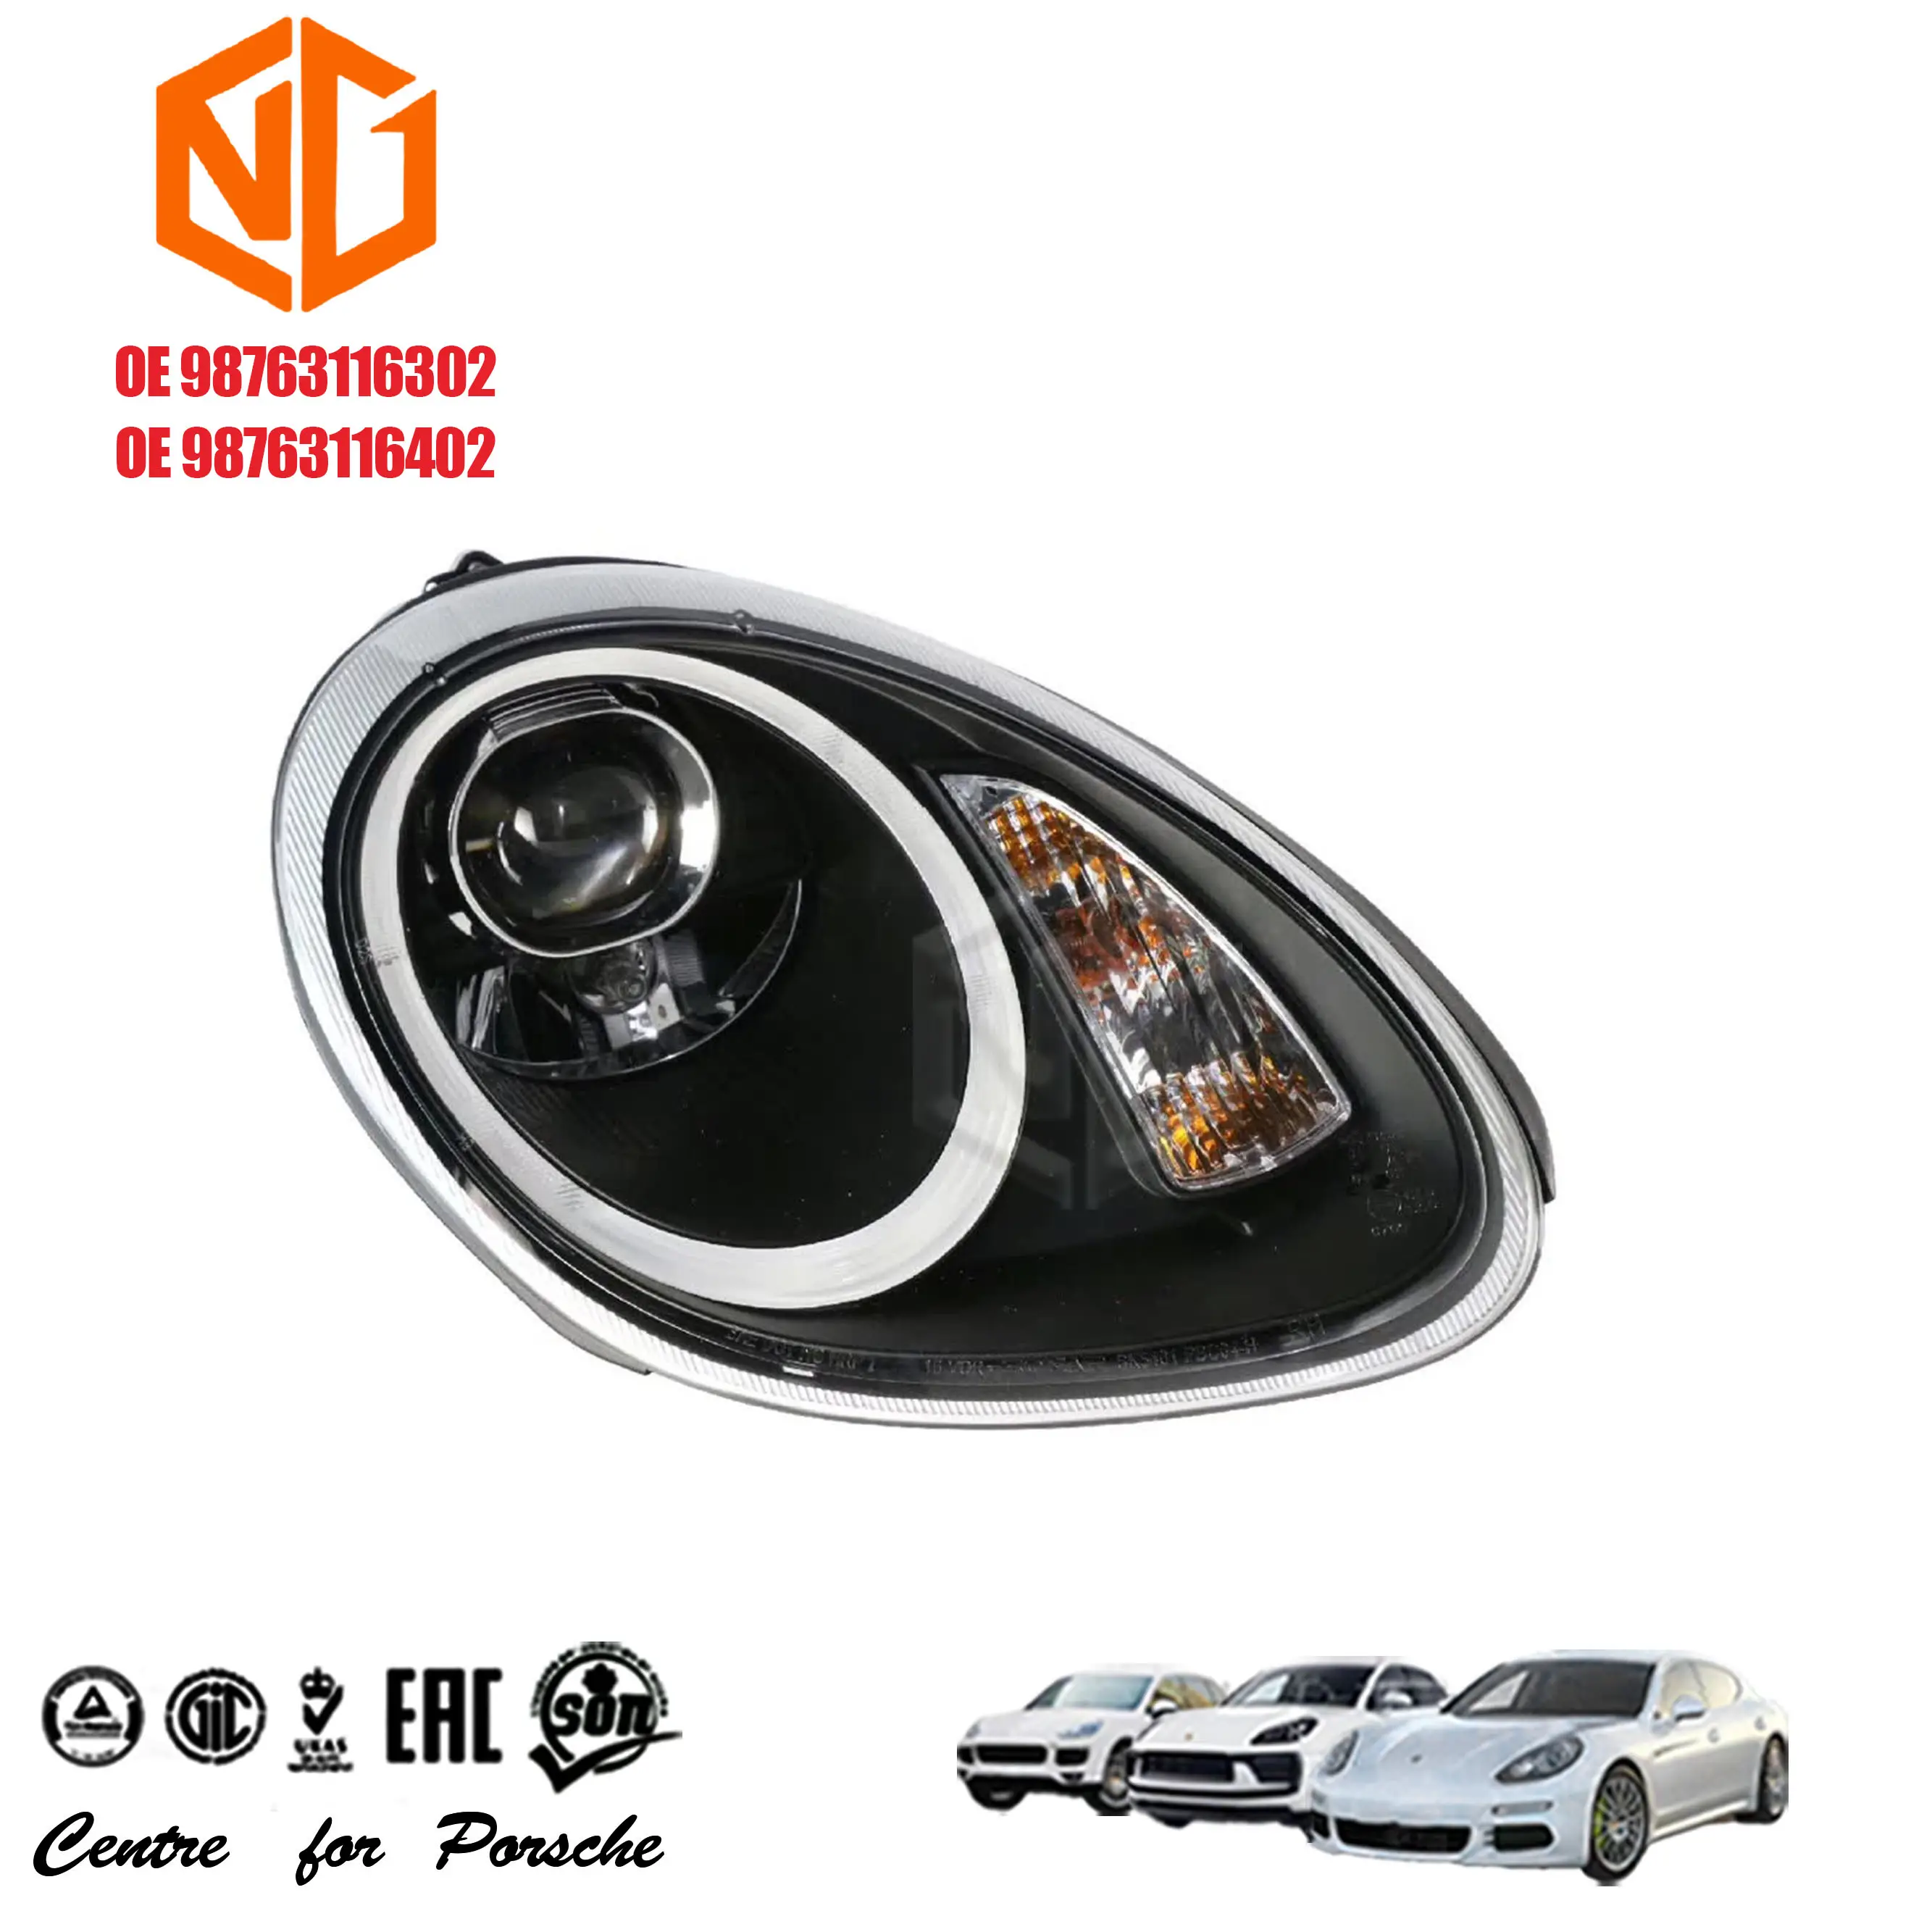 GZ LAIDE lampu depan proyektor LED tabung Upgrade lensa baru lampu depan mobil modifikasi OEM 98763116302 98763116402 untuk Porsche 987